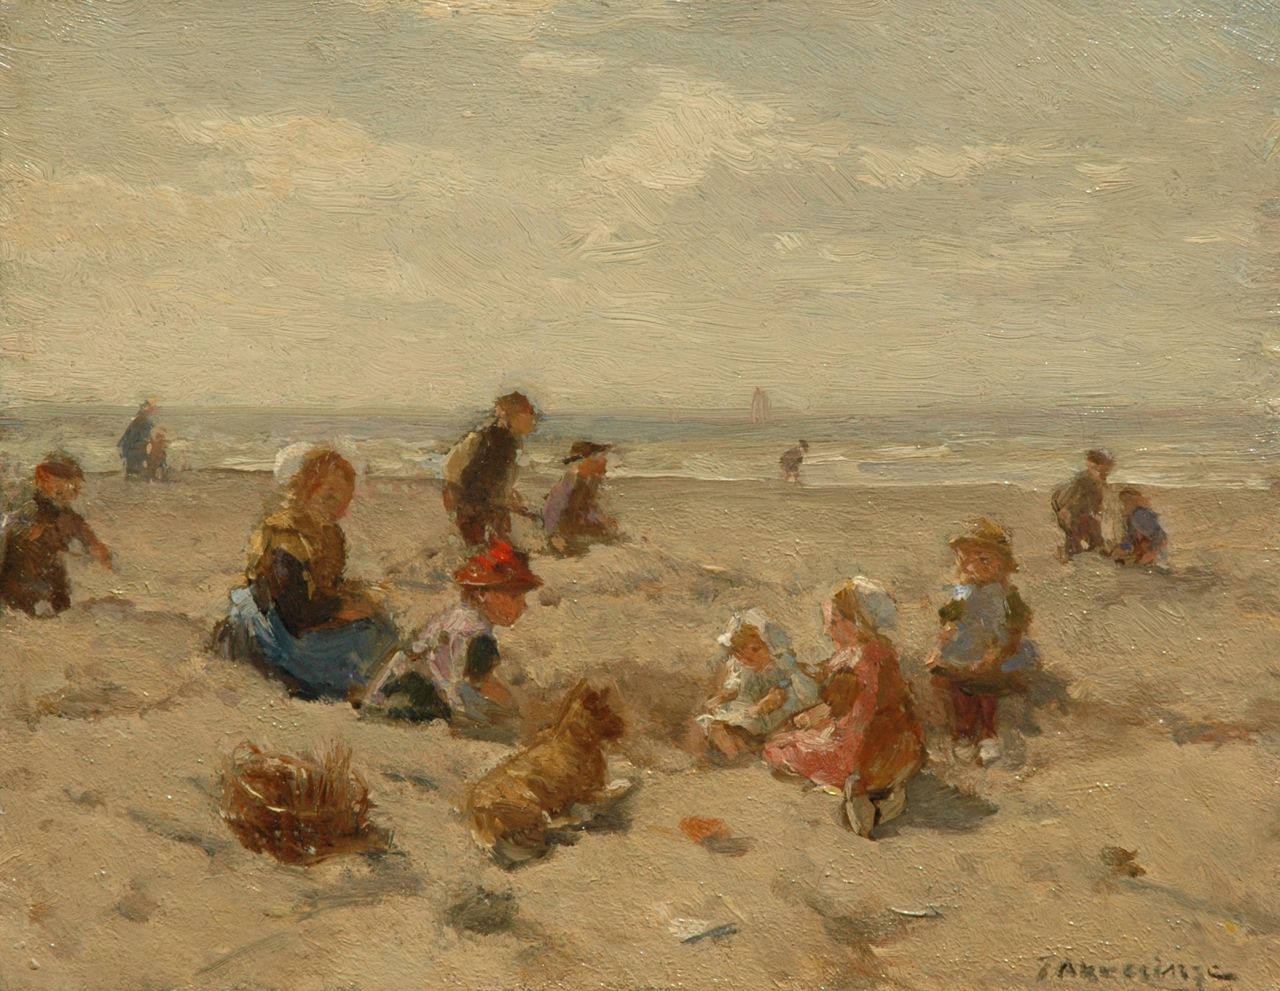 Akkeringa J.E.H.  | 'Johannes Evert' Hendrik Akkeringa, Spelende kinderen op het strand, olieverf op paneel 17,9 x 22,6 cm, gesigneerd rechtsonder